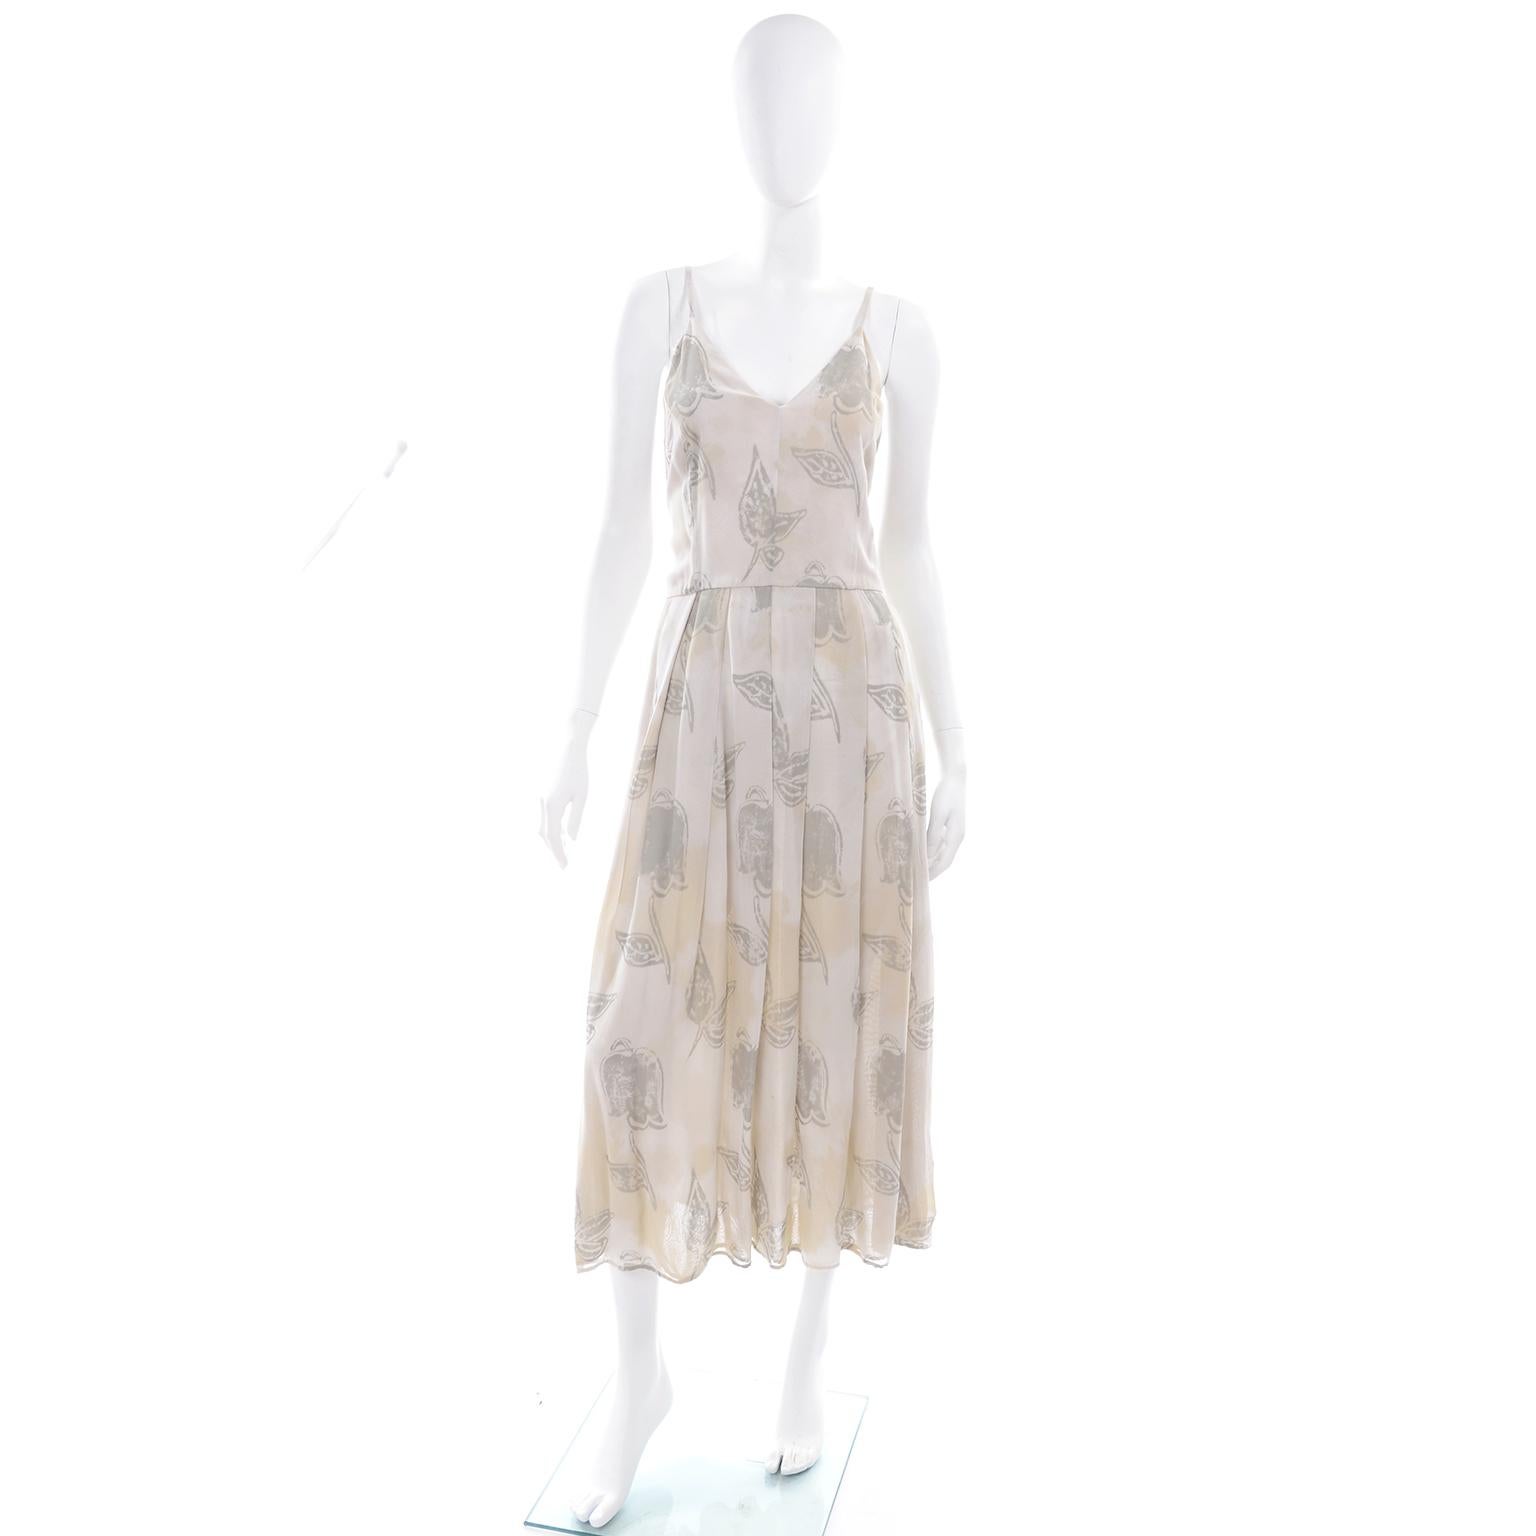 Il s'agit d'une robe vintage unique de Giorgio Armani, de couleur crème kaki pâle et vert sauge, dont le motif présente des feuilles abstraites et des superpositions de couleurs voulues qui ressemblent presque à des taches de thé. Cette robe a un